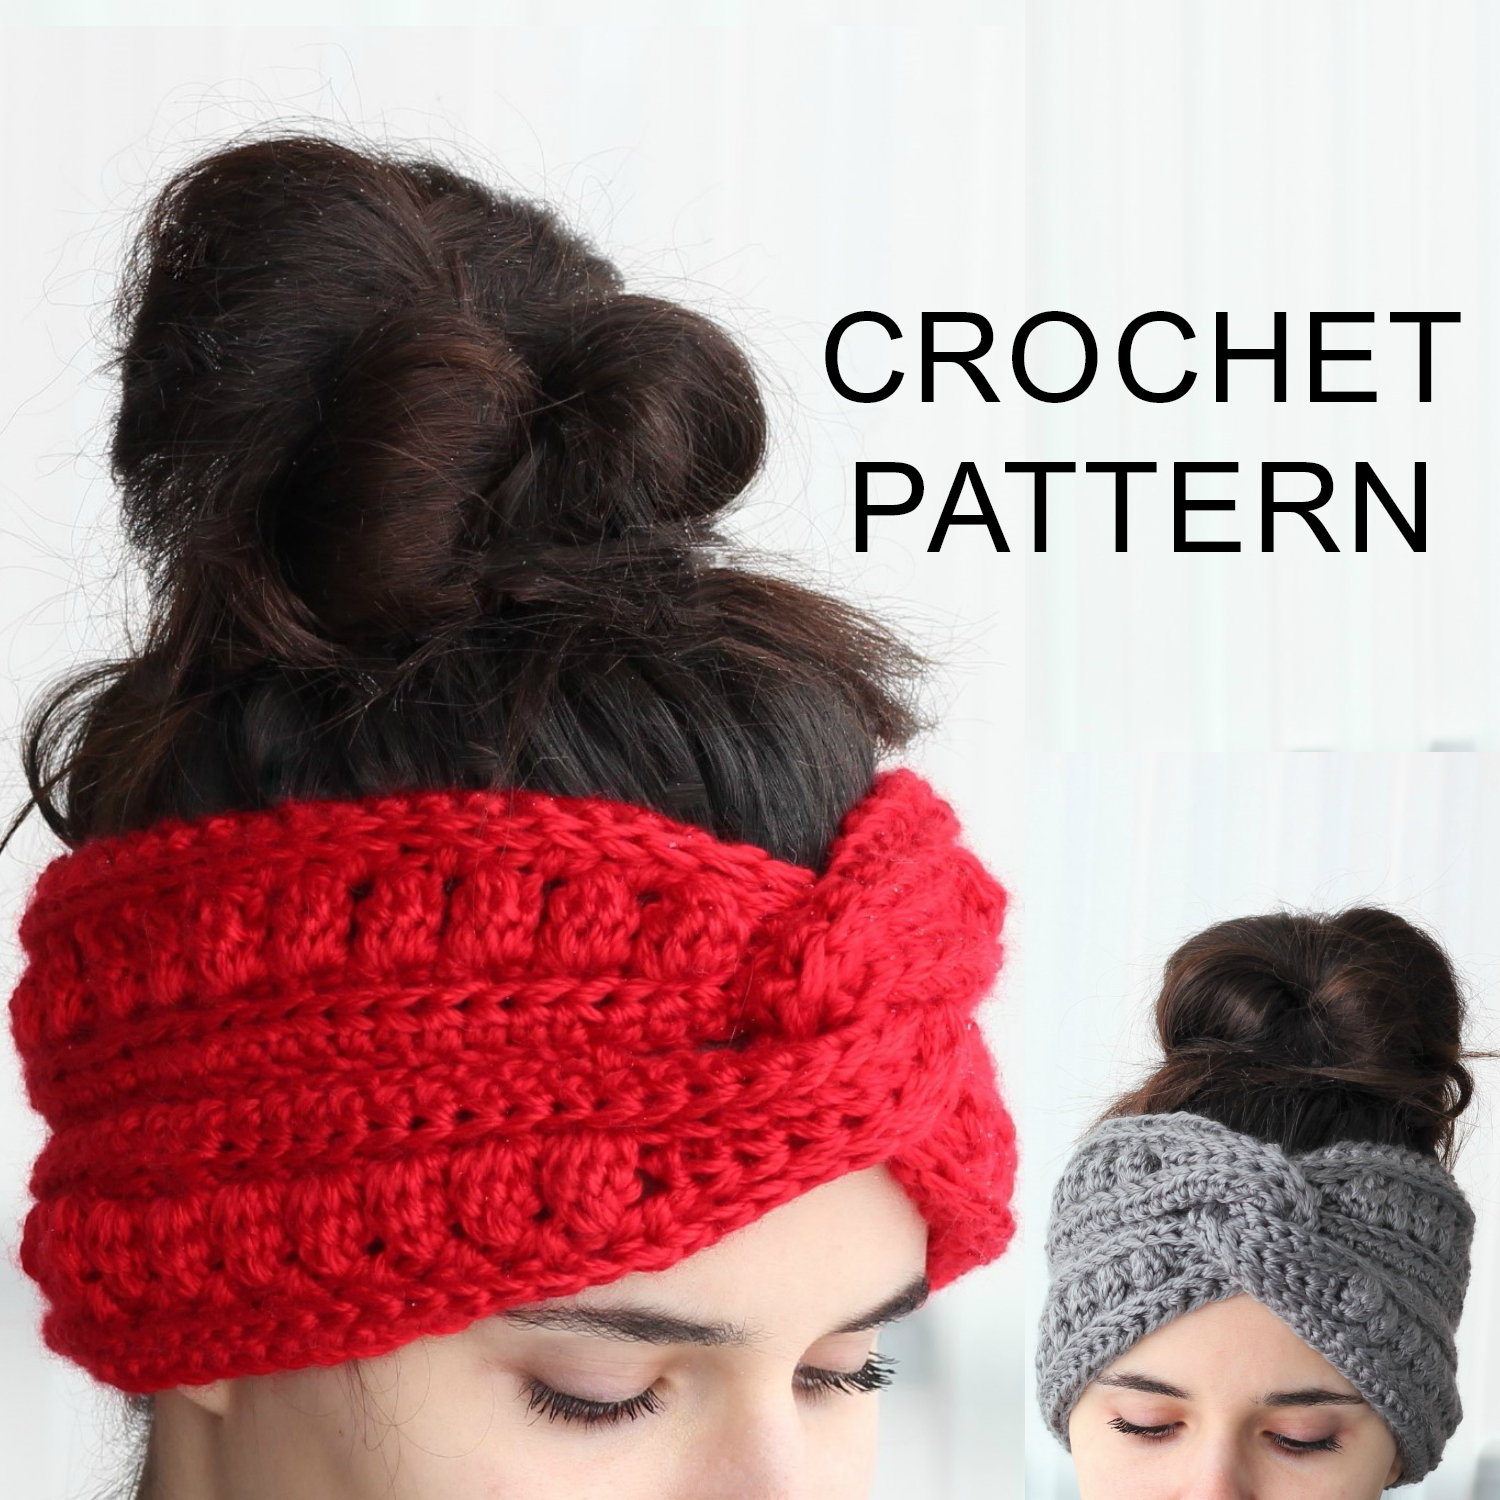 Knitted Headband With Flower Pattern Aura Headband Ear Warmer Crochet Pattern Pdf